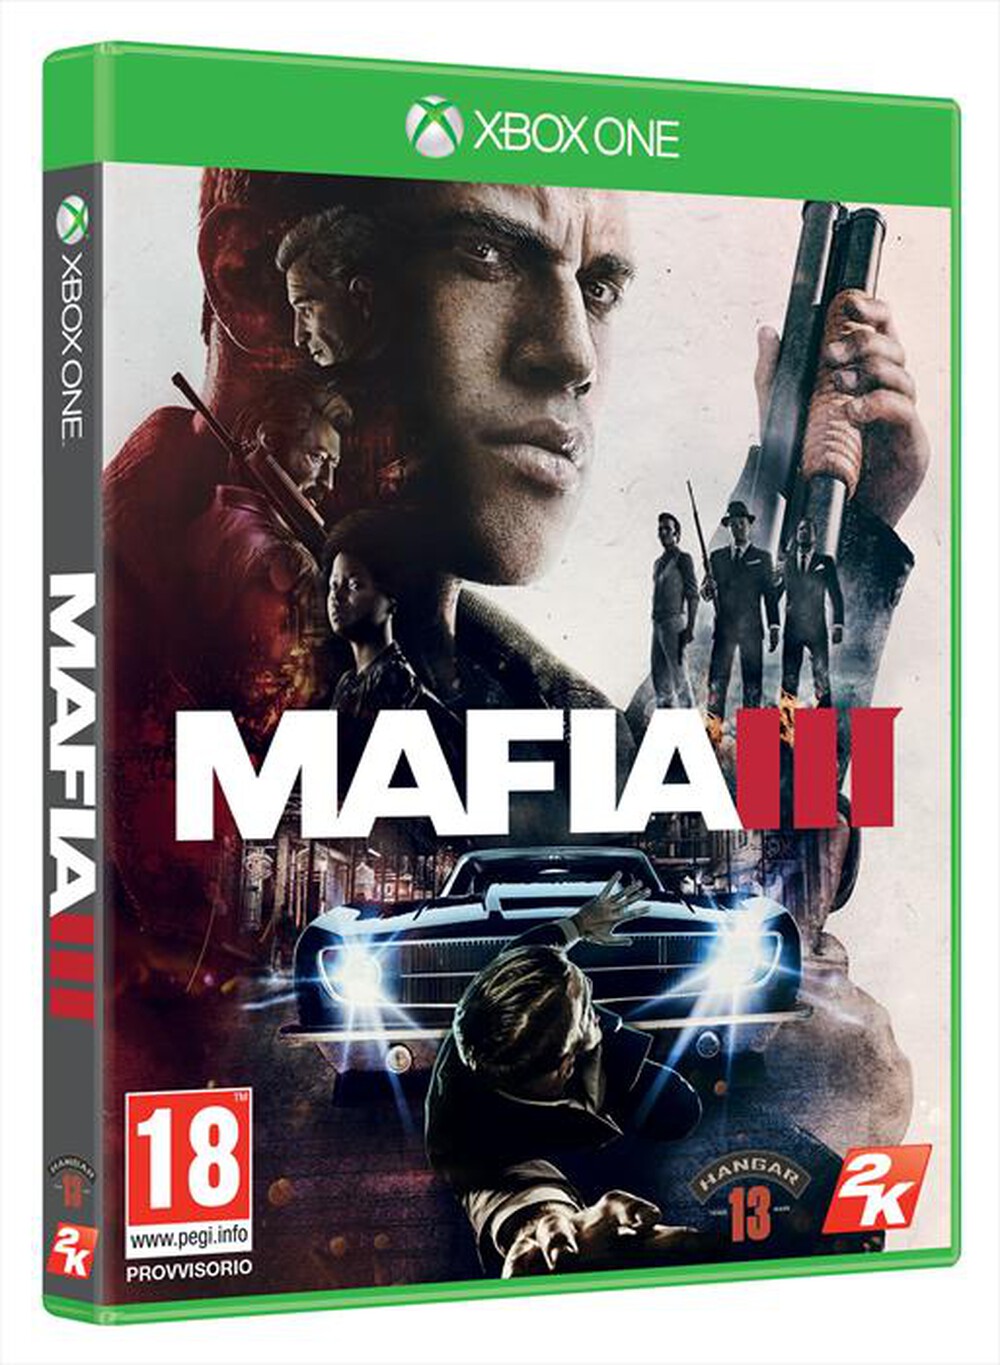 "TAKE TWO - Mafia III Xbox One - "